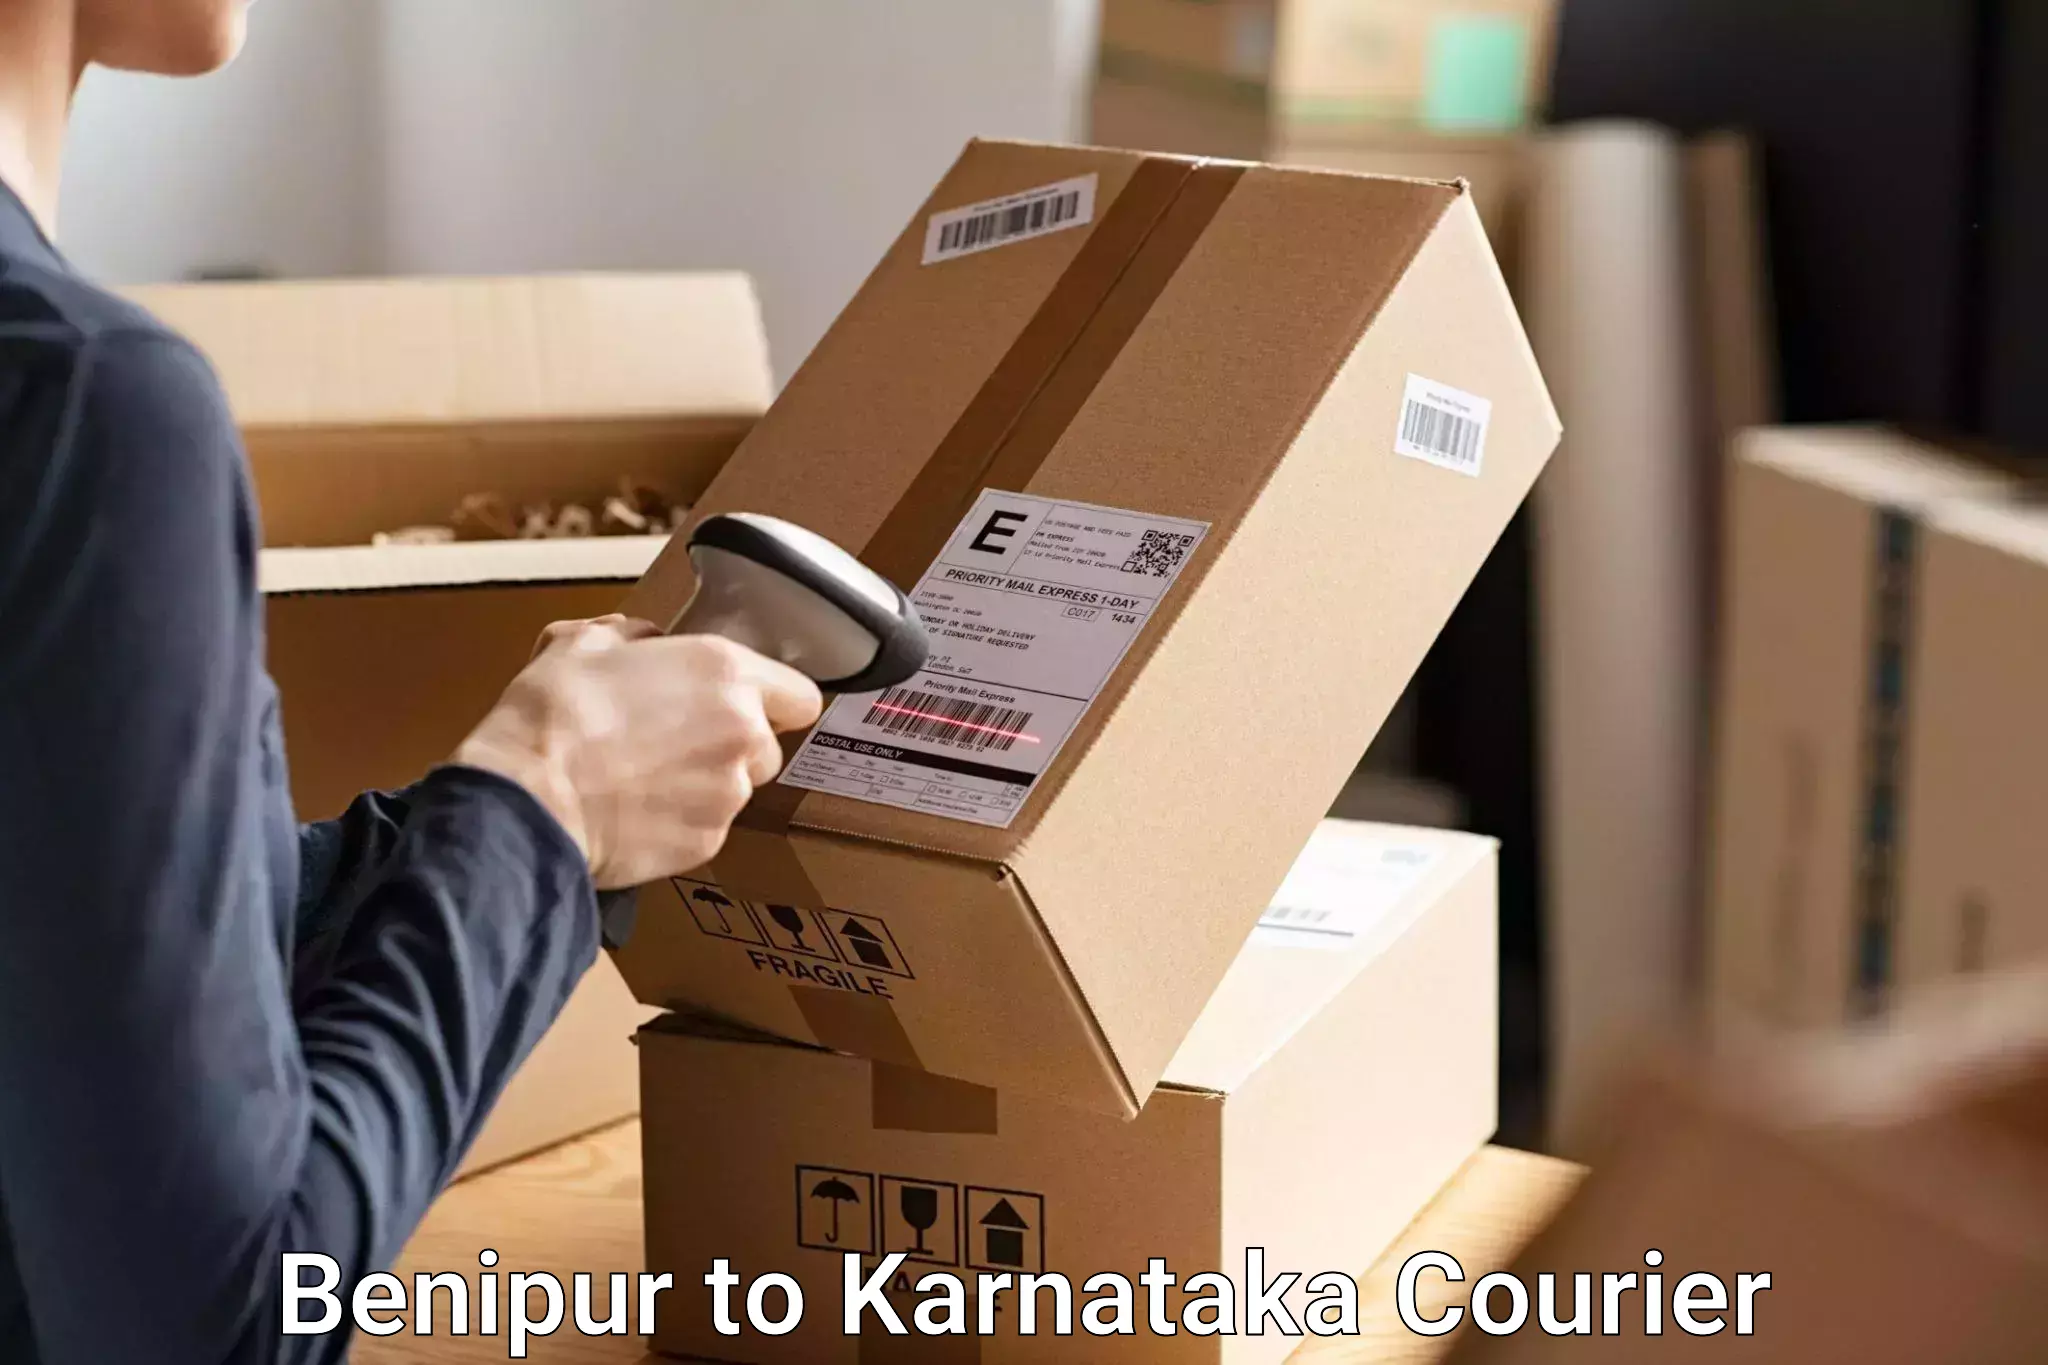 Baggage shipping experience in Benipur to Kanjarakatte